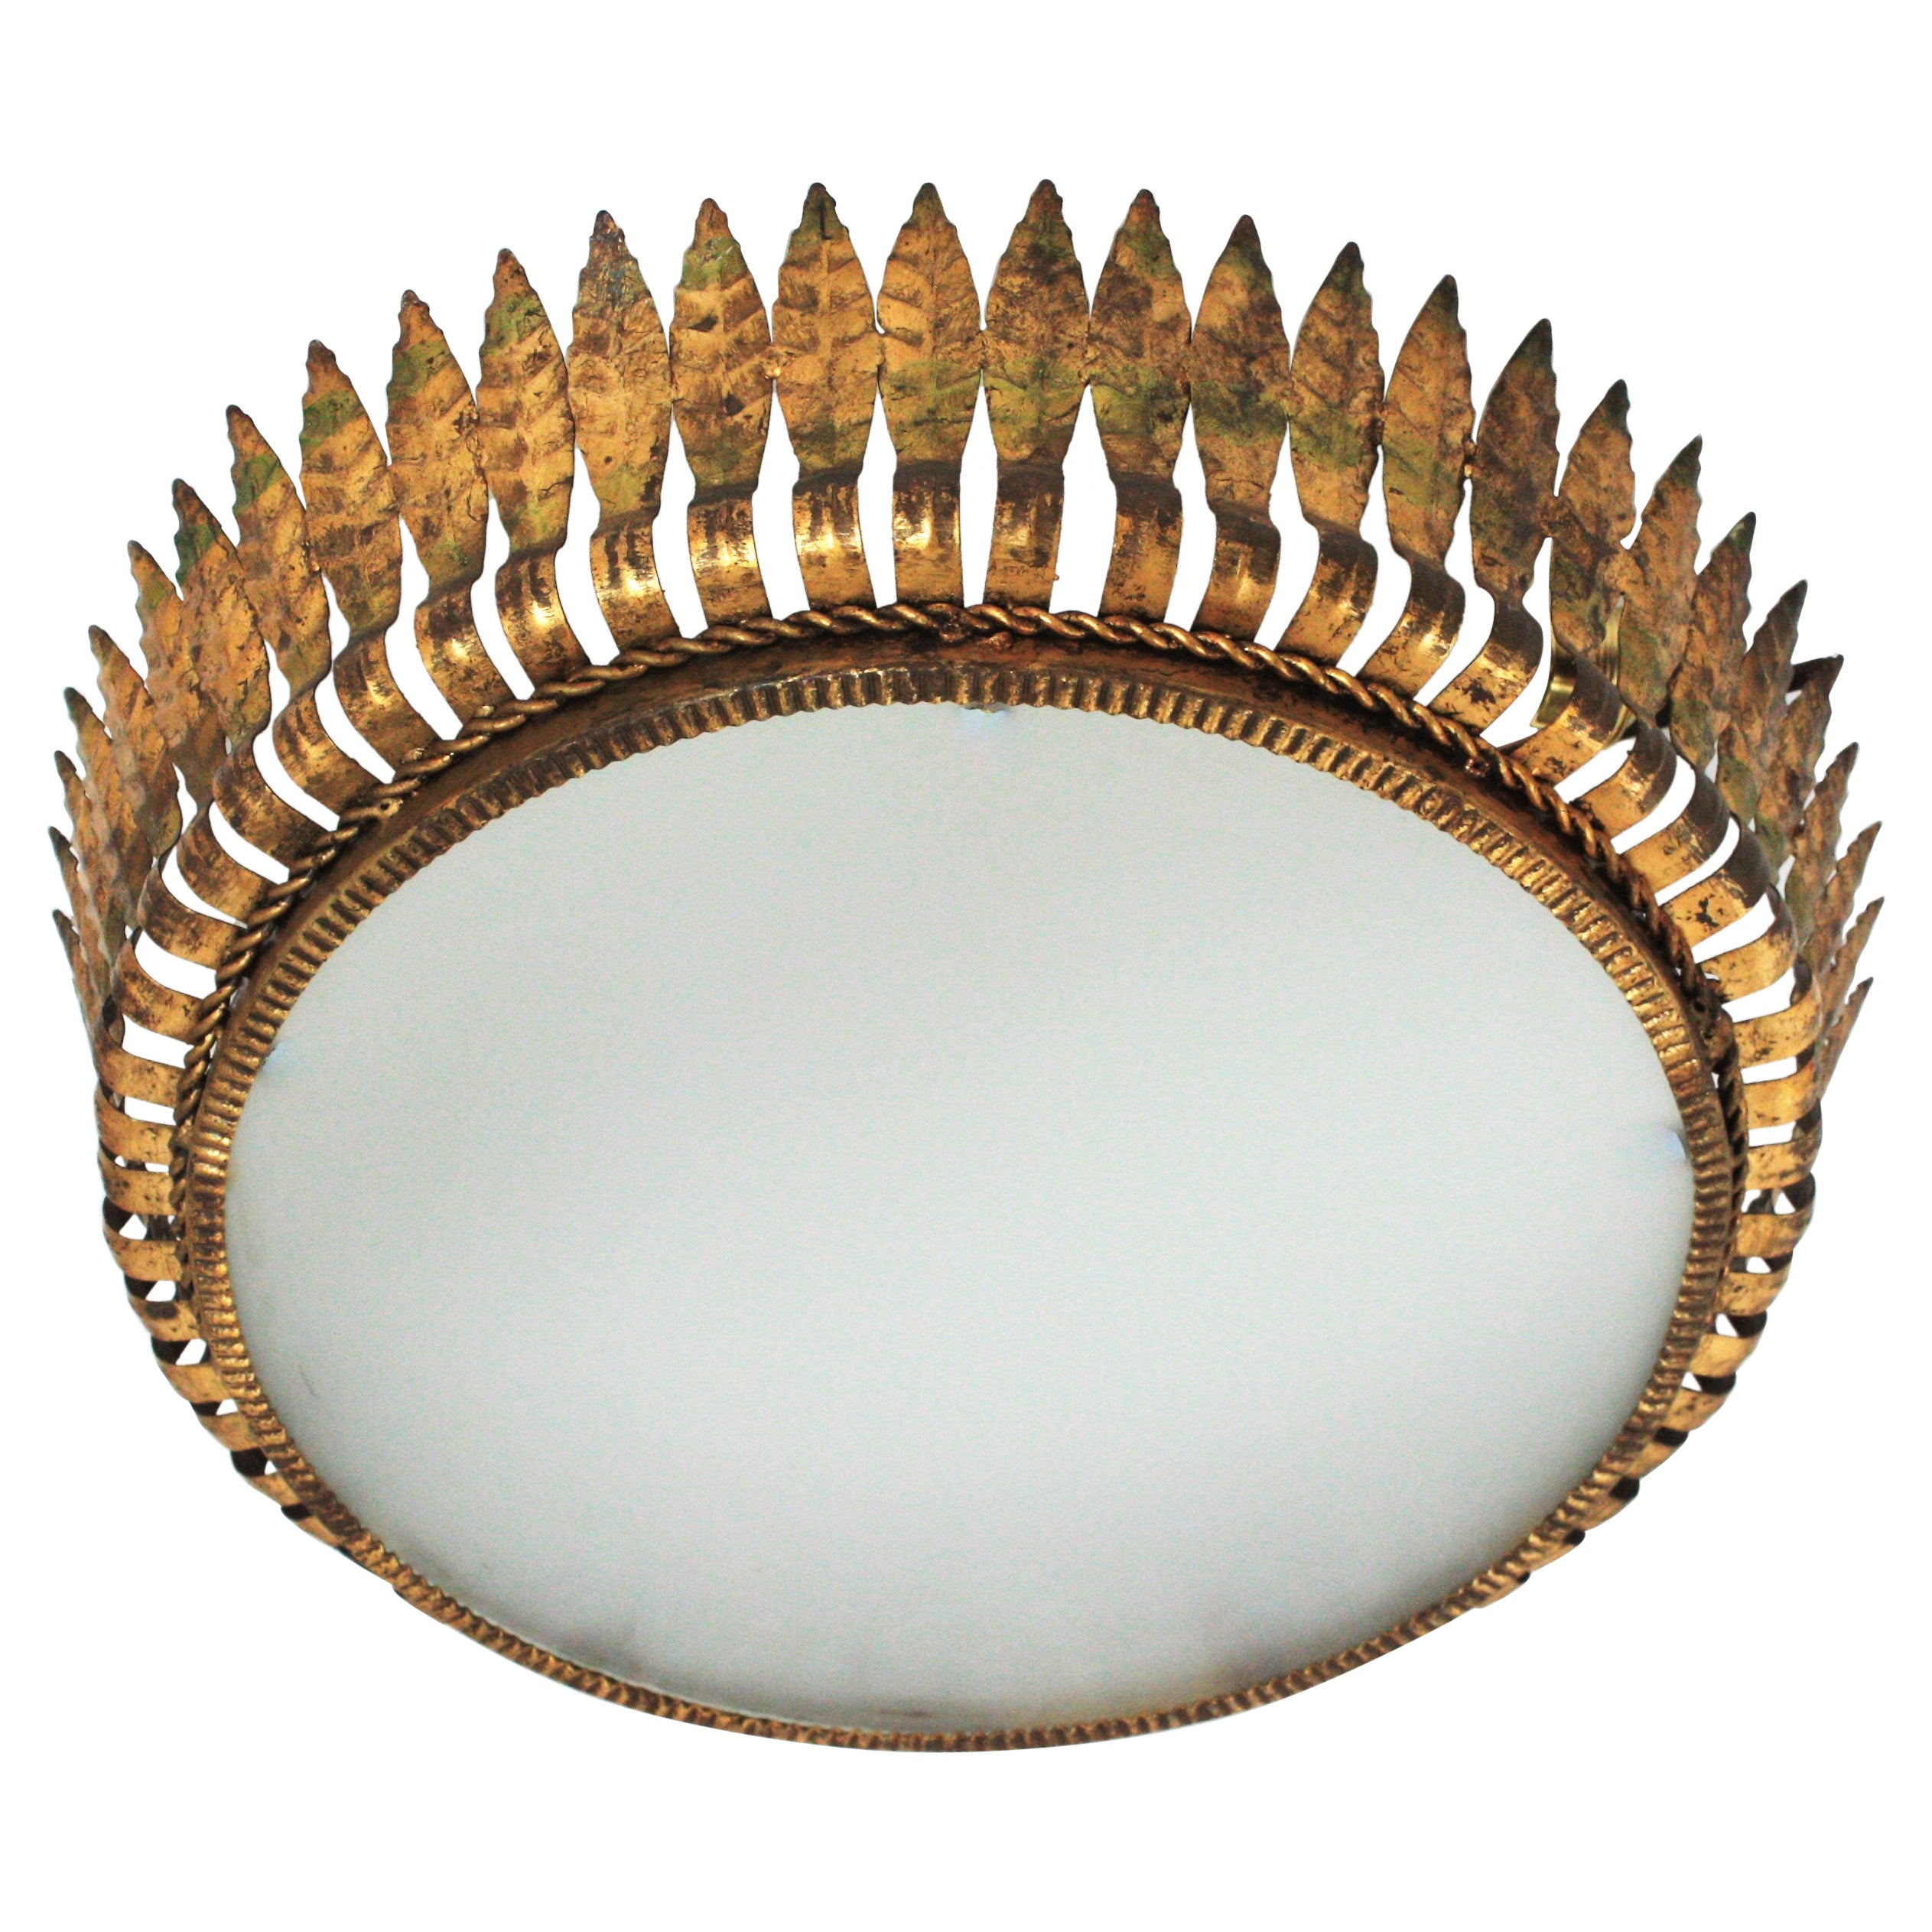 Große spanische Crown Sunburst Leafed Light Fixture aus vergoldetem Metall und Milchglas